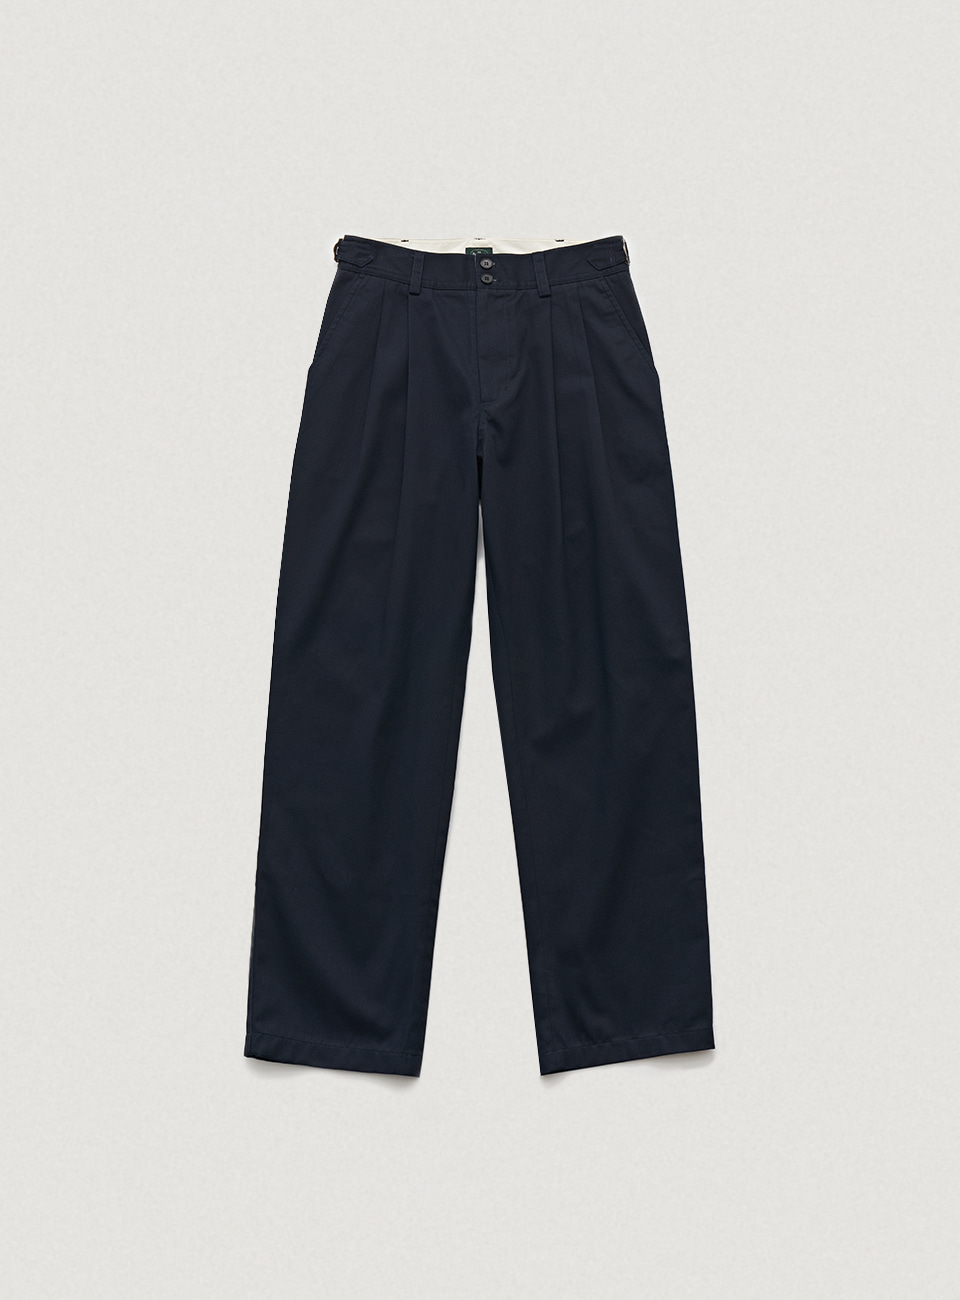 Navy Twoett Cotton Chino Pants